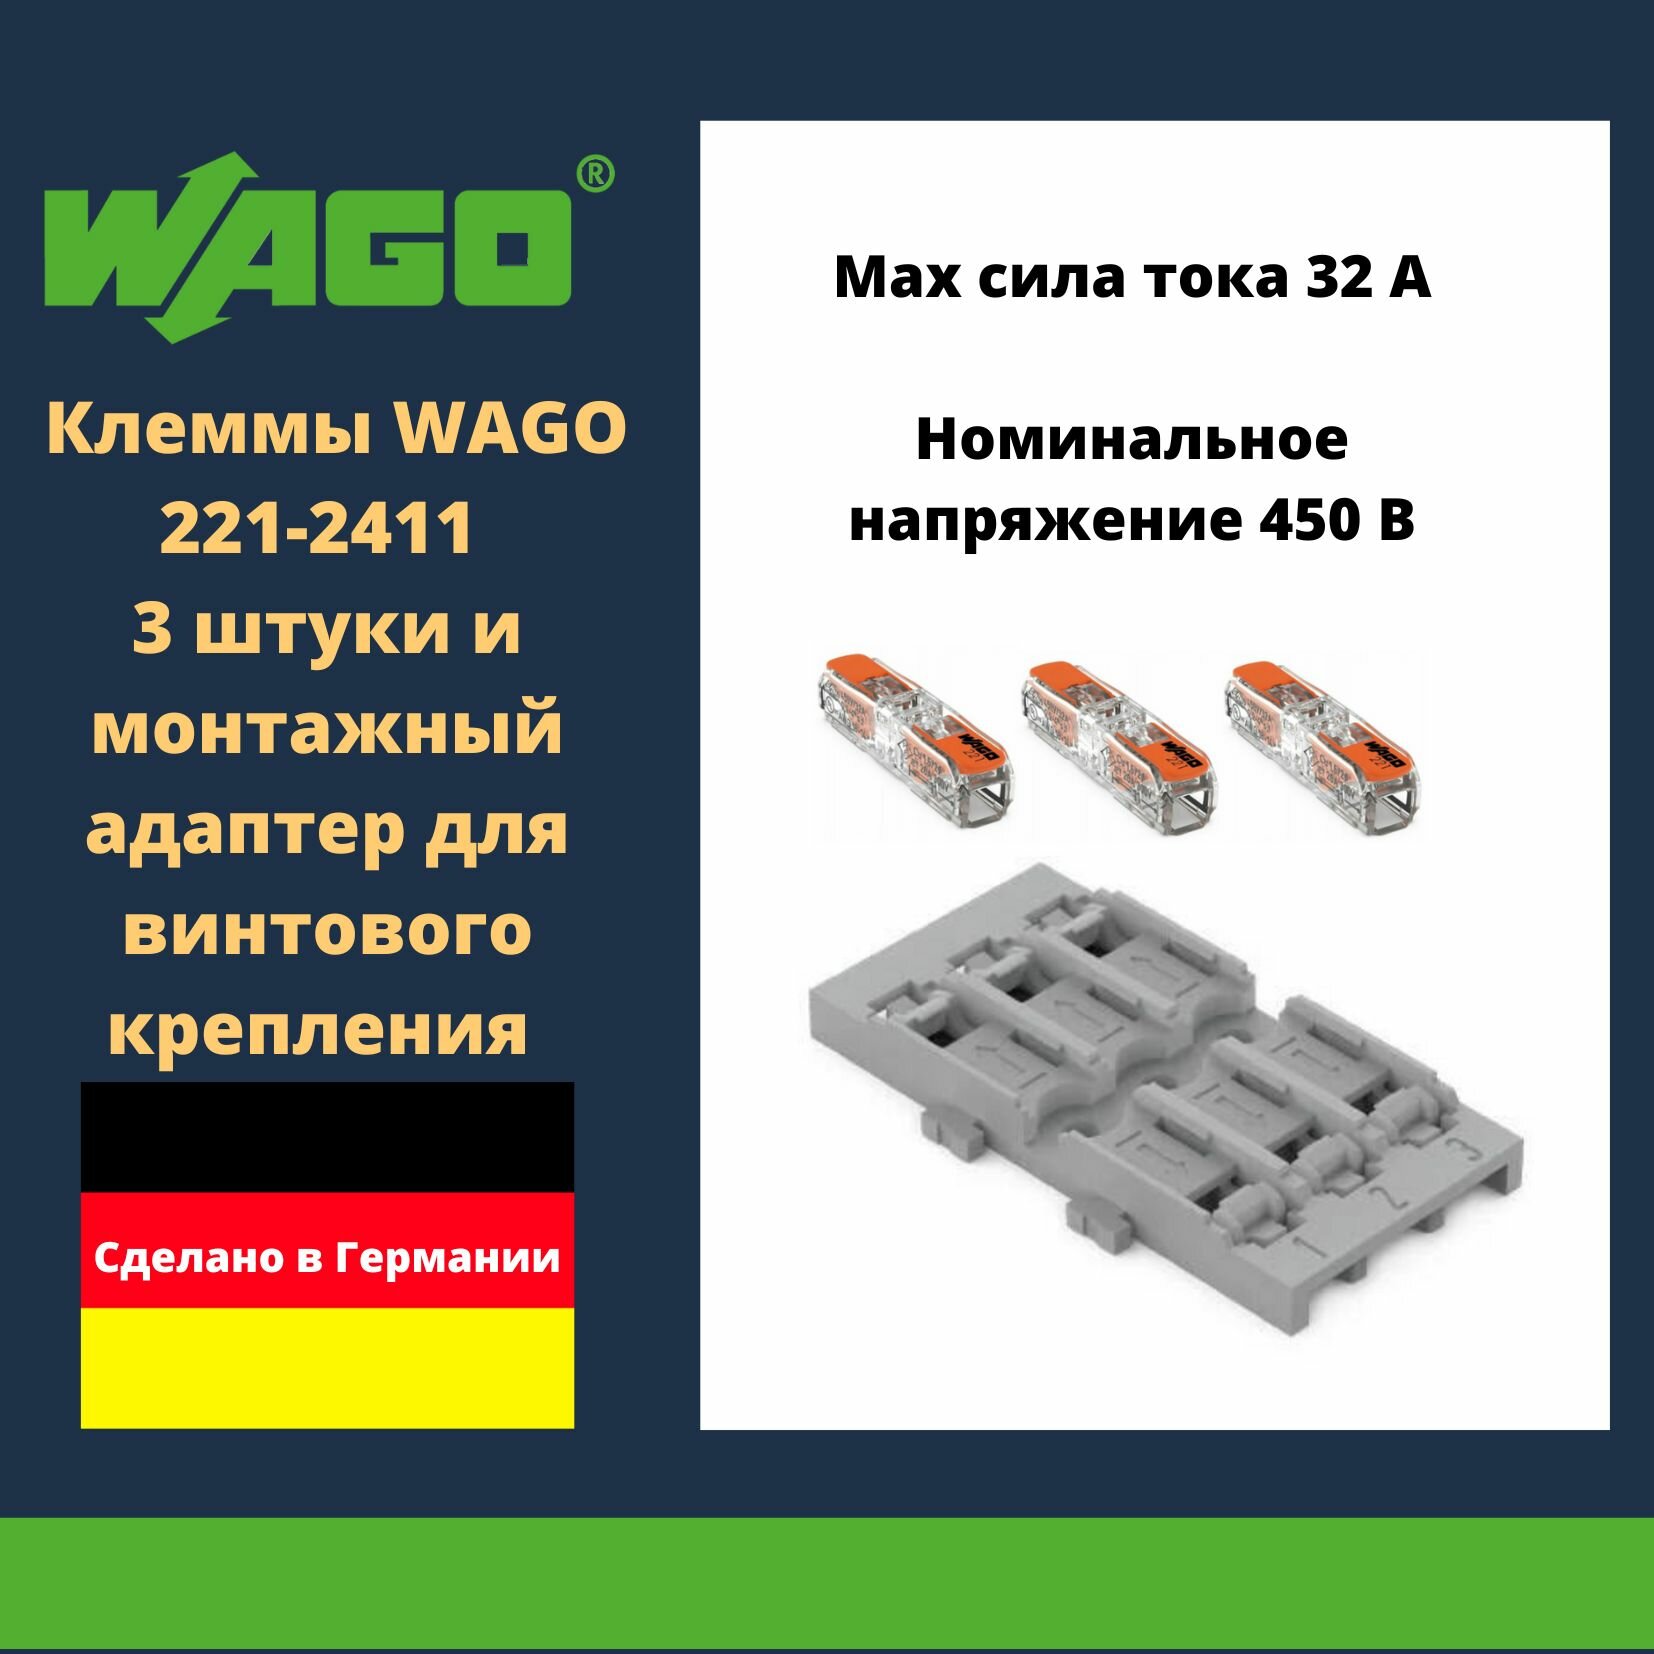 Комплект клеммы WAGO 221-2411 compact 3 шт. + монтажный адаптер для винтового крепления 221-2523 3-кан. серый